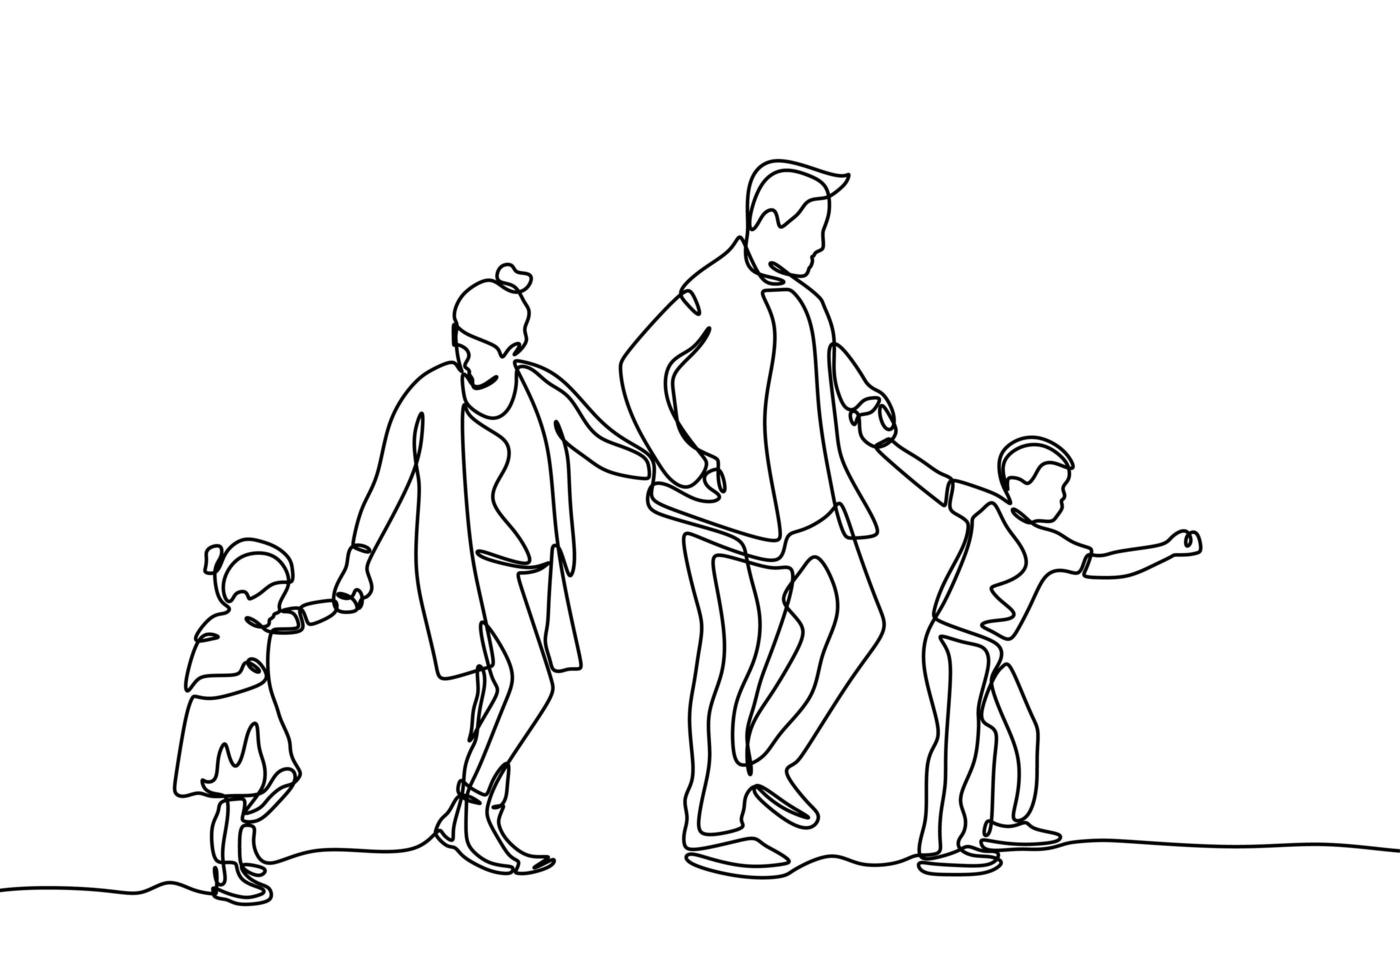 disegno a tratteggio continuo dei membri della famiglia. padre, madre, figlia e figlio si tengono per mano insieme. vettore